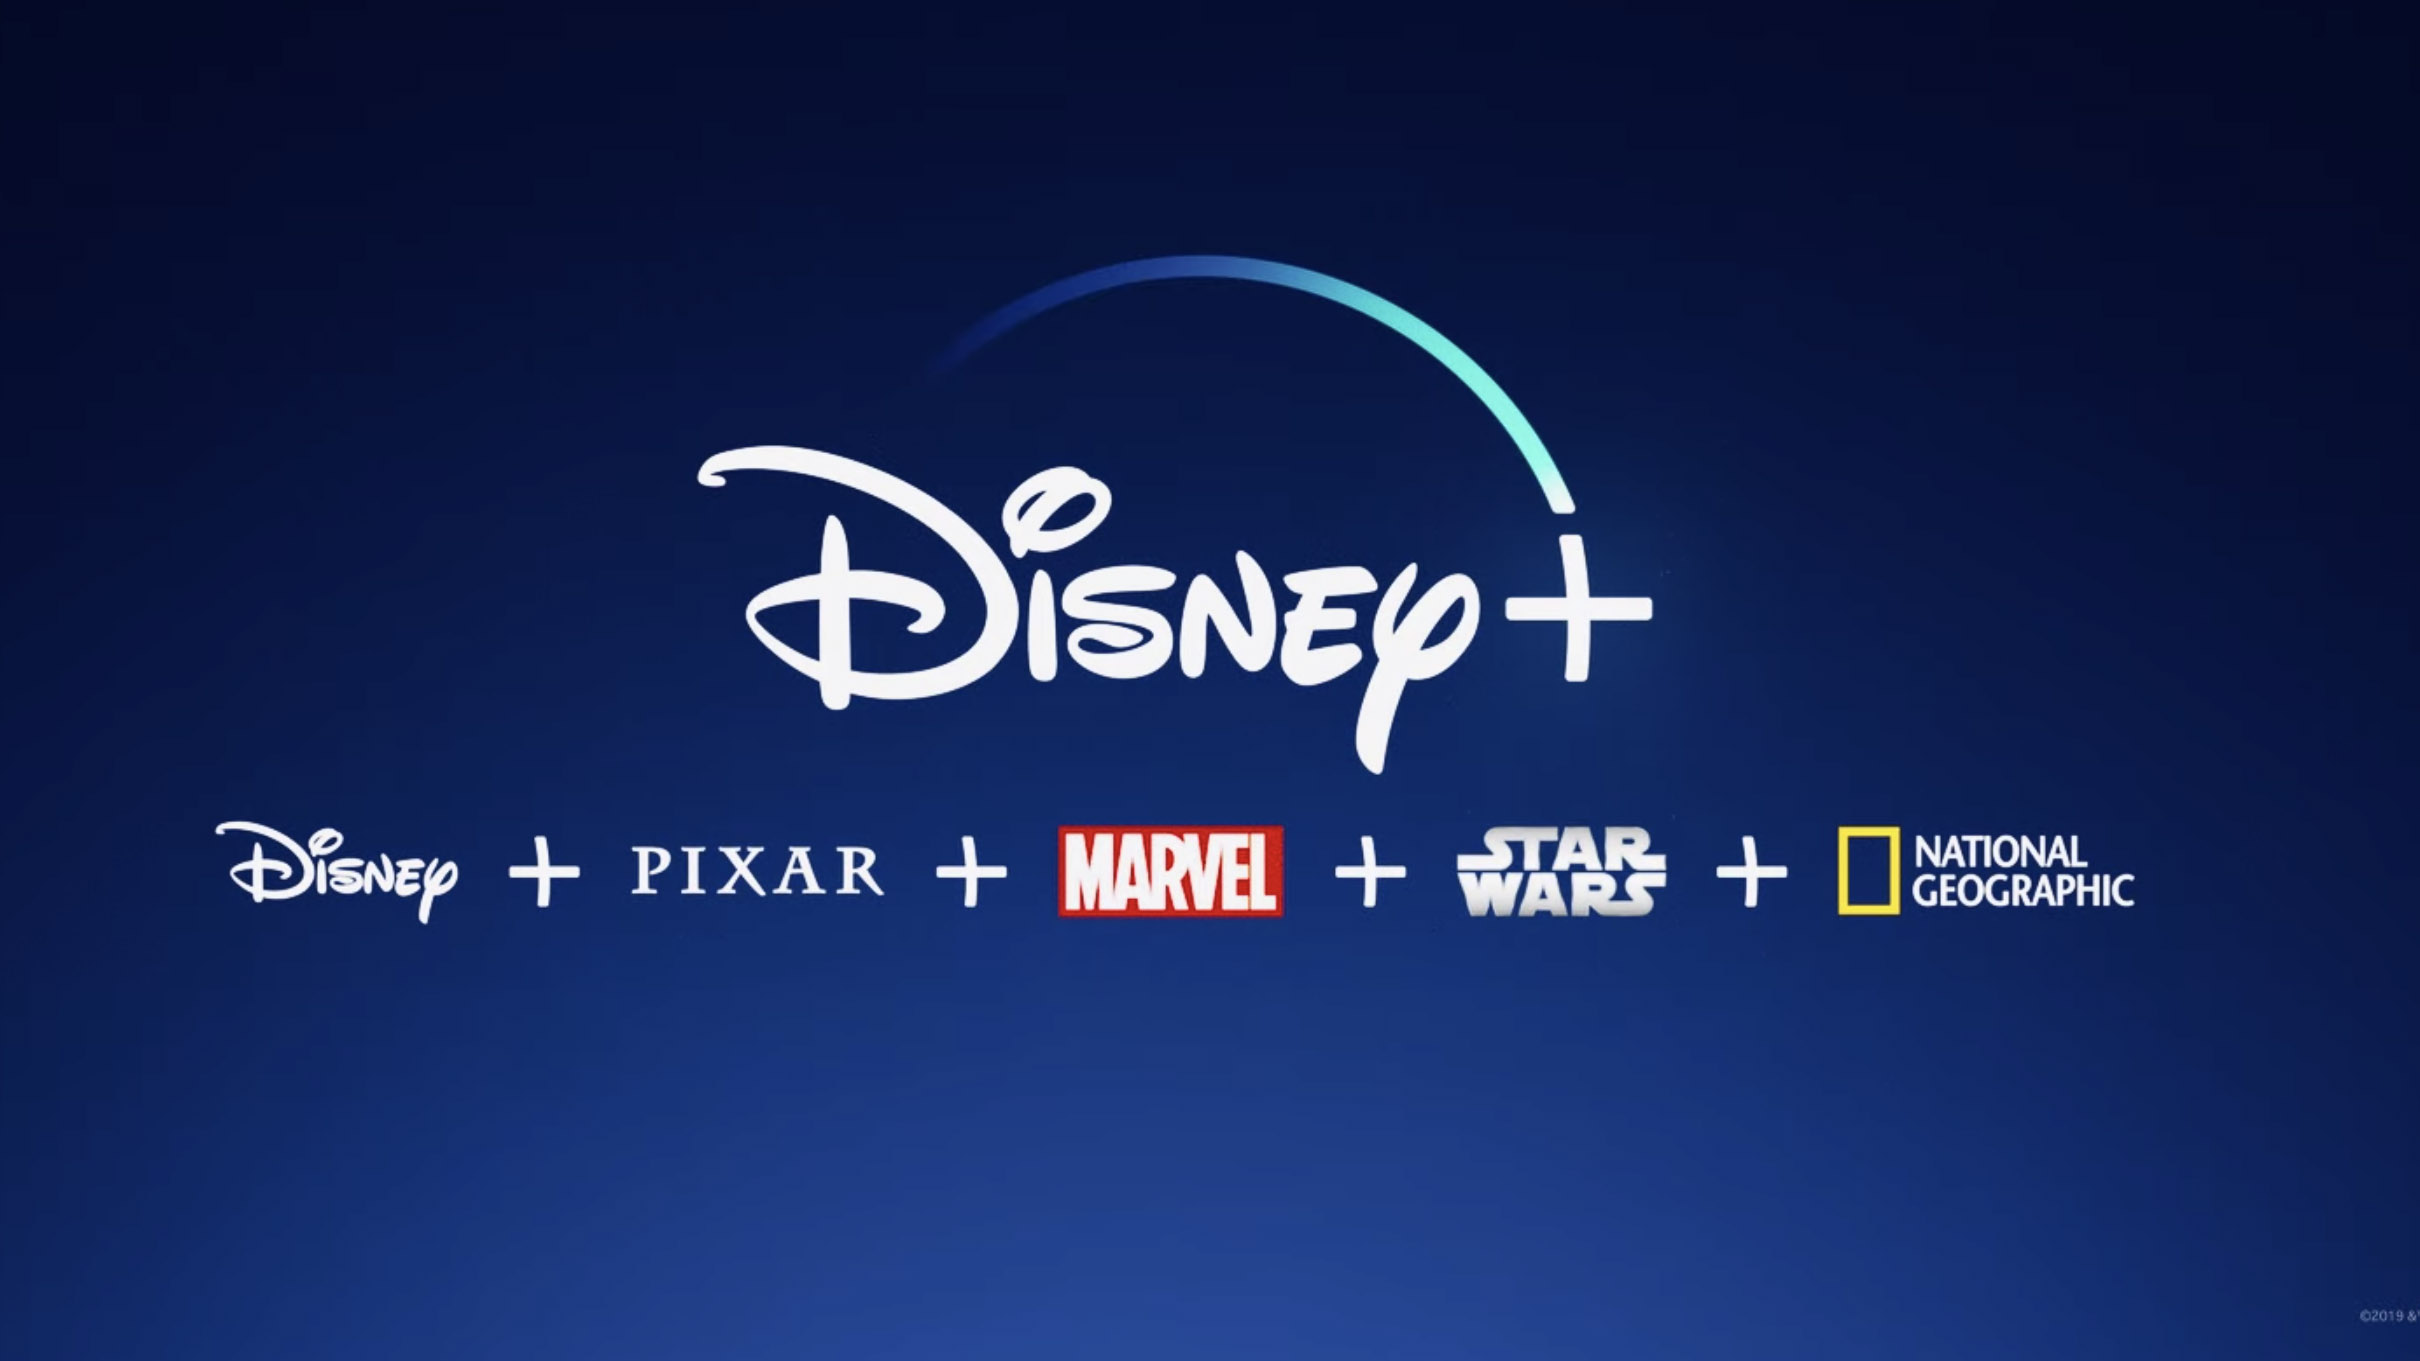 Disney Plus oferecerá um novo tipo de assinatura com preços reduzidos, com  anúncios - NotebookCheck.net News